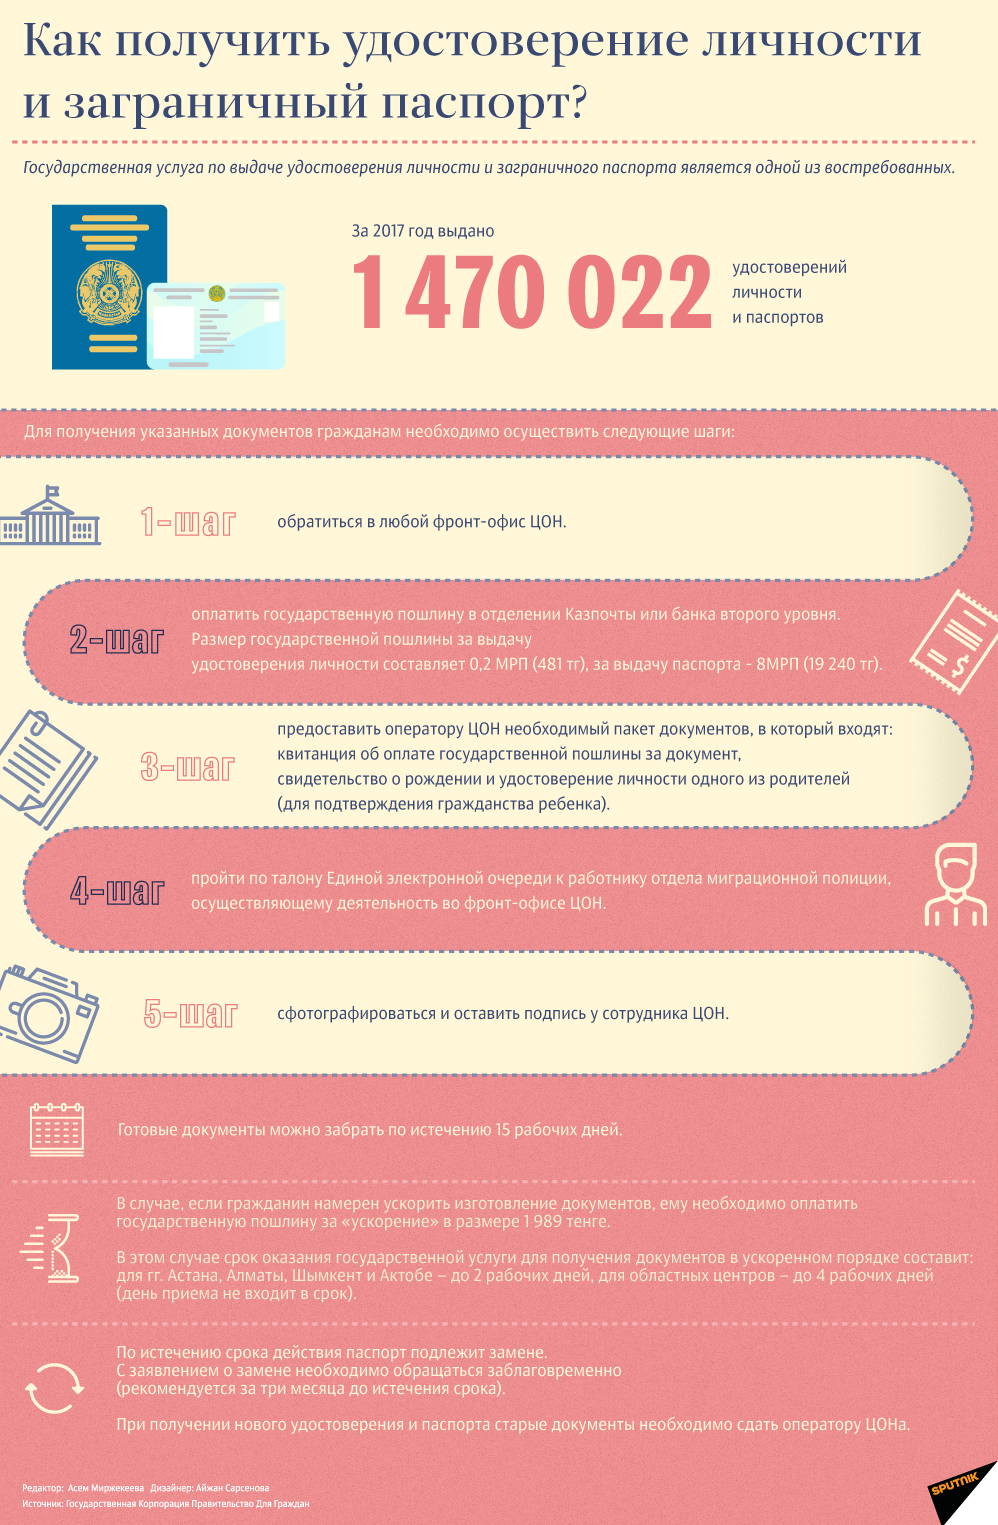 Как получить удостоверение личности и паспорт в Казахстане